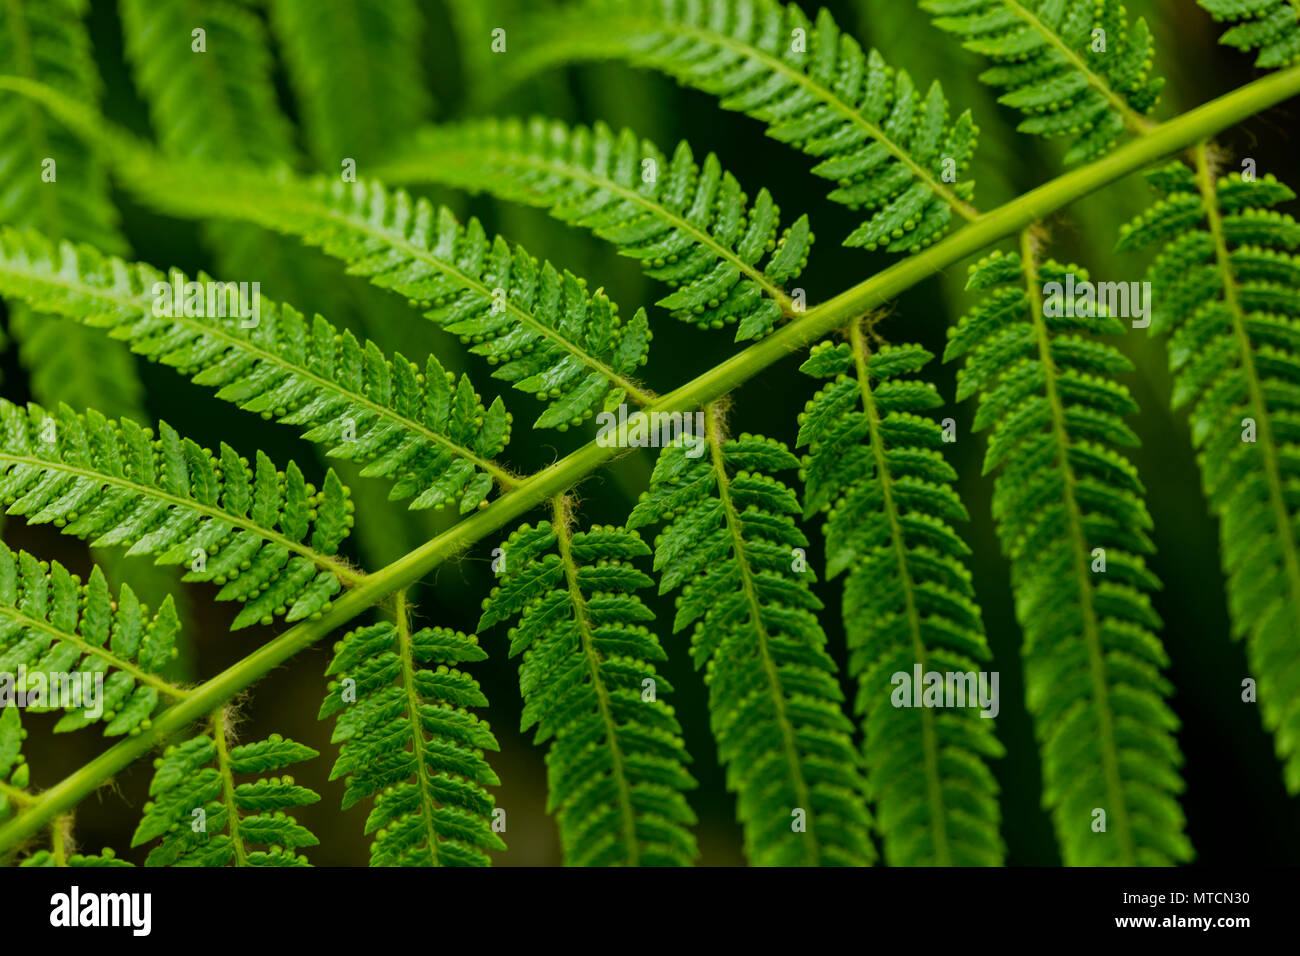 Detail of the fern (Asplenium sandersonii) leaves Stock Photo